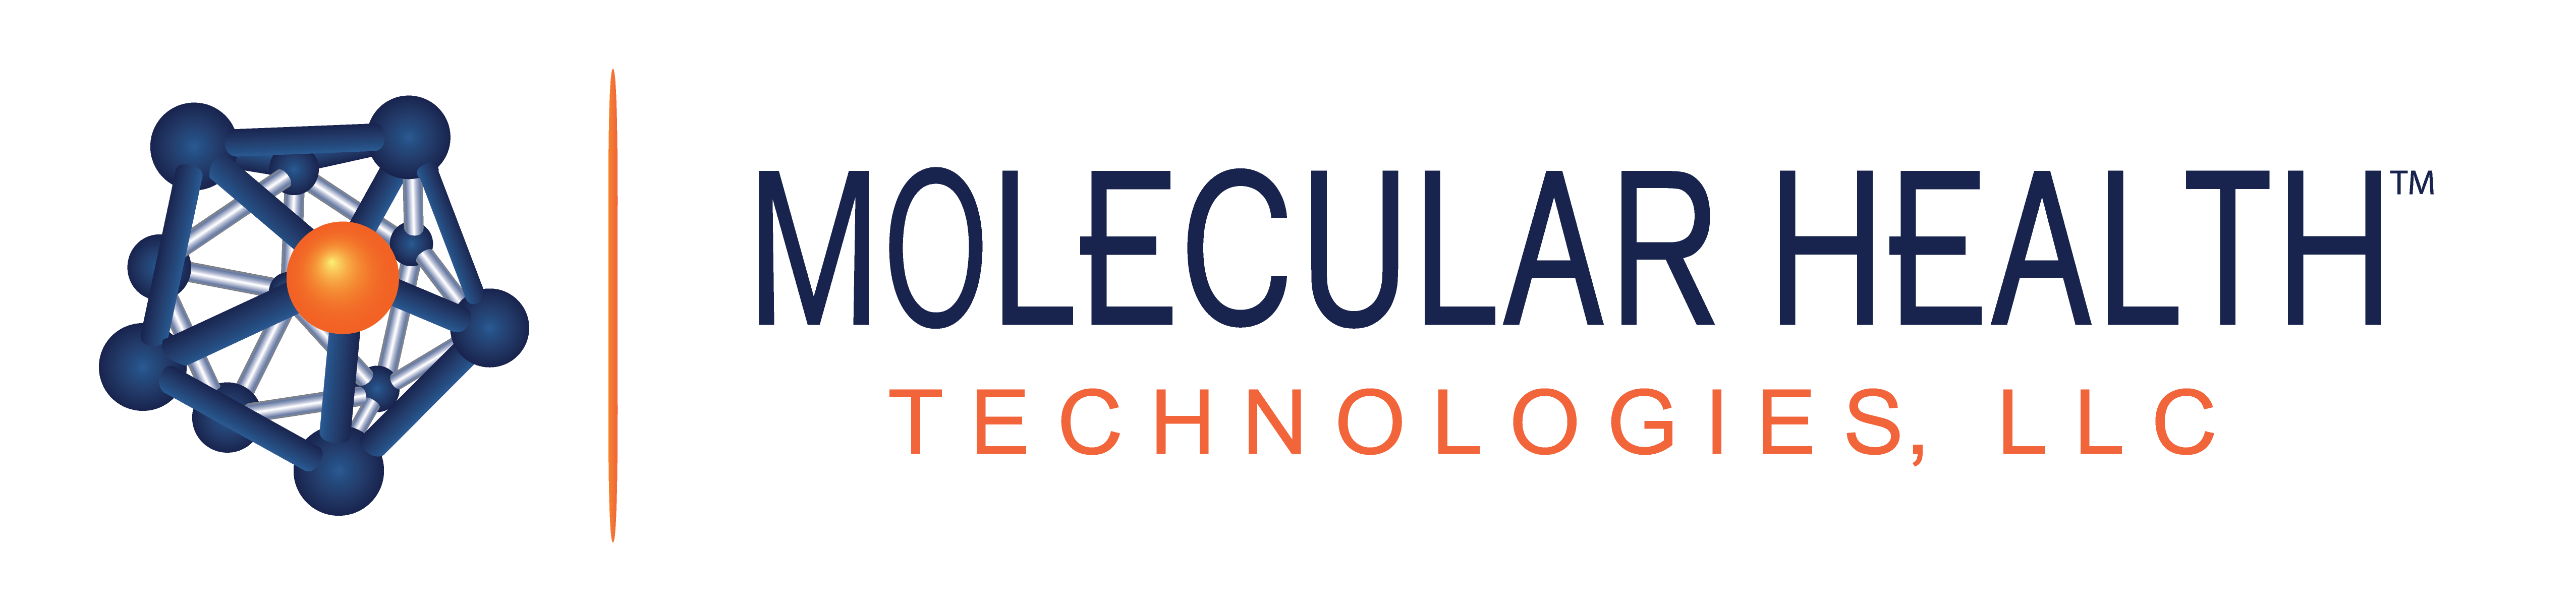 Molecular-Heath-Technologies-logo-new